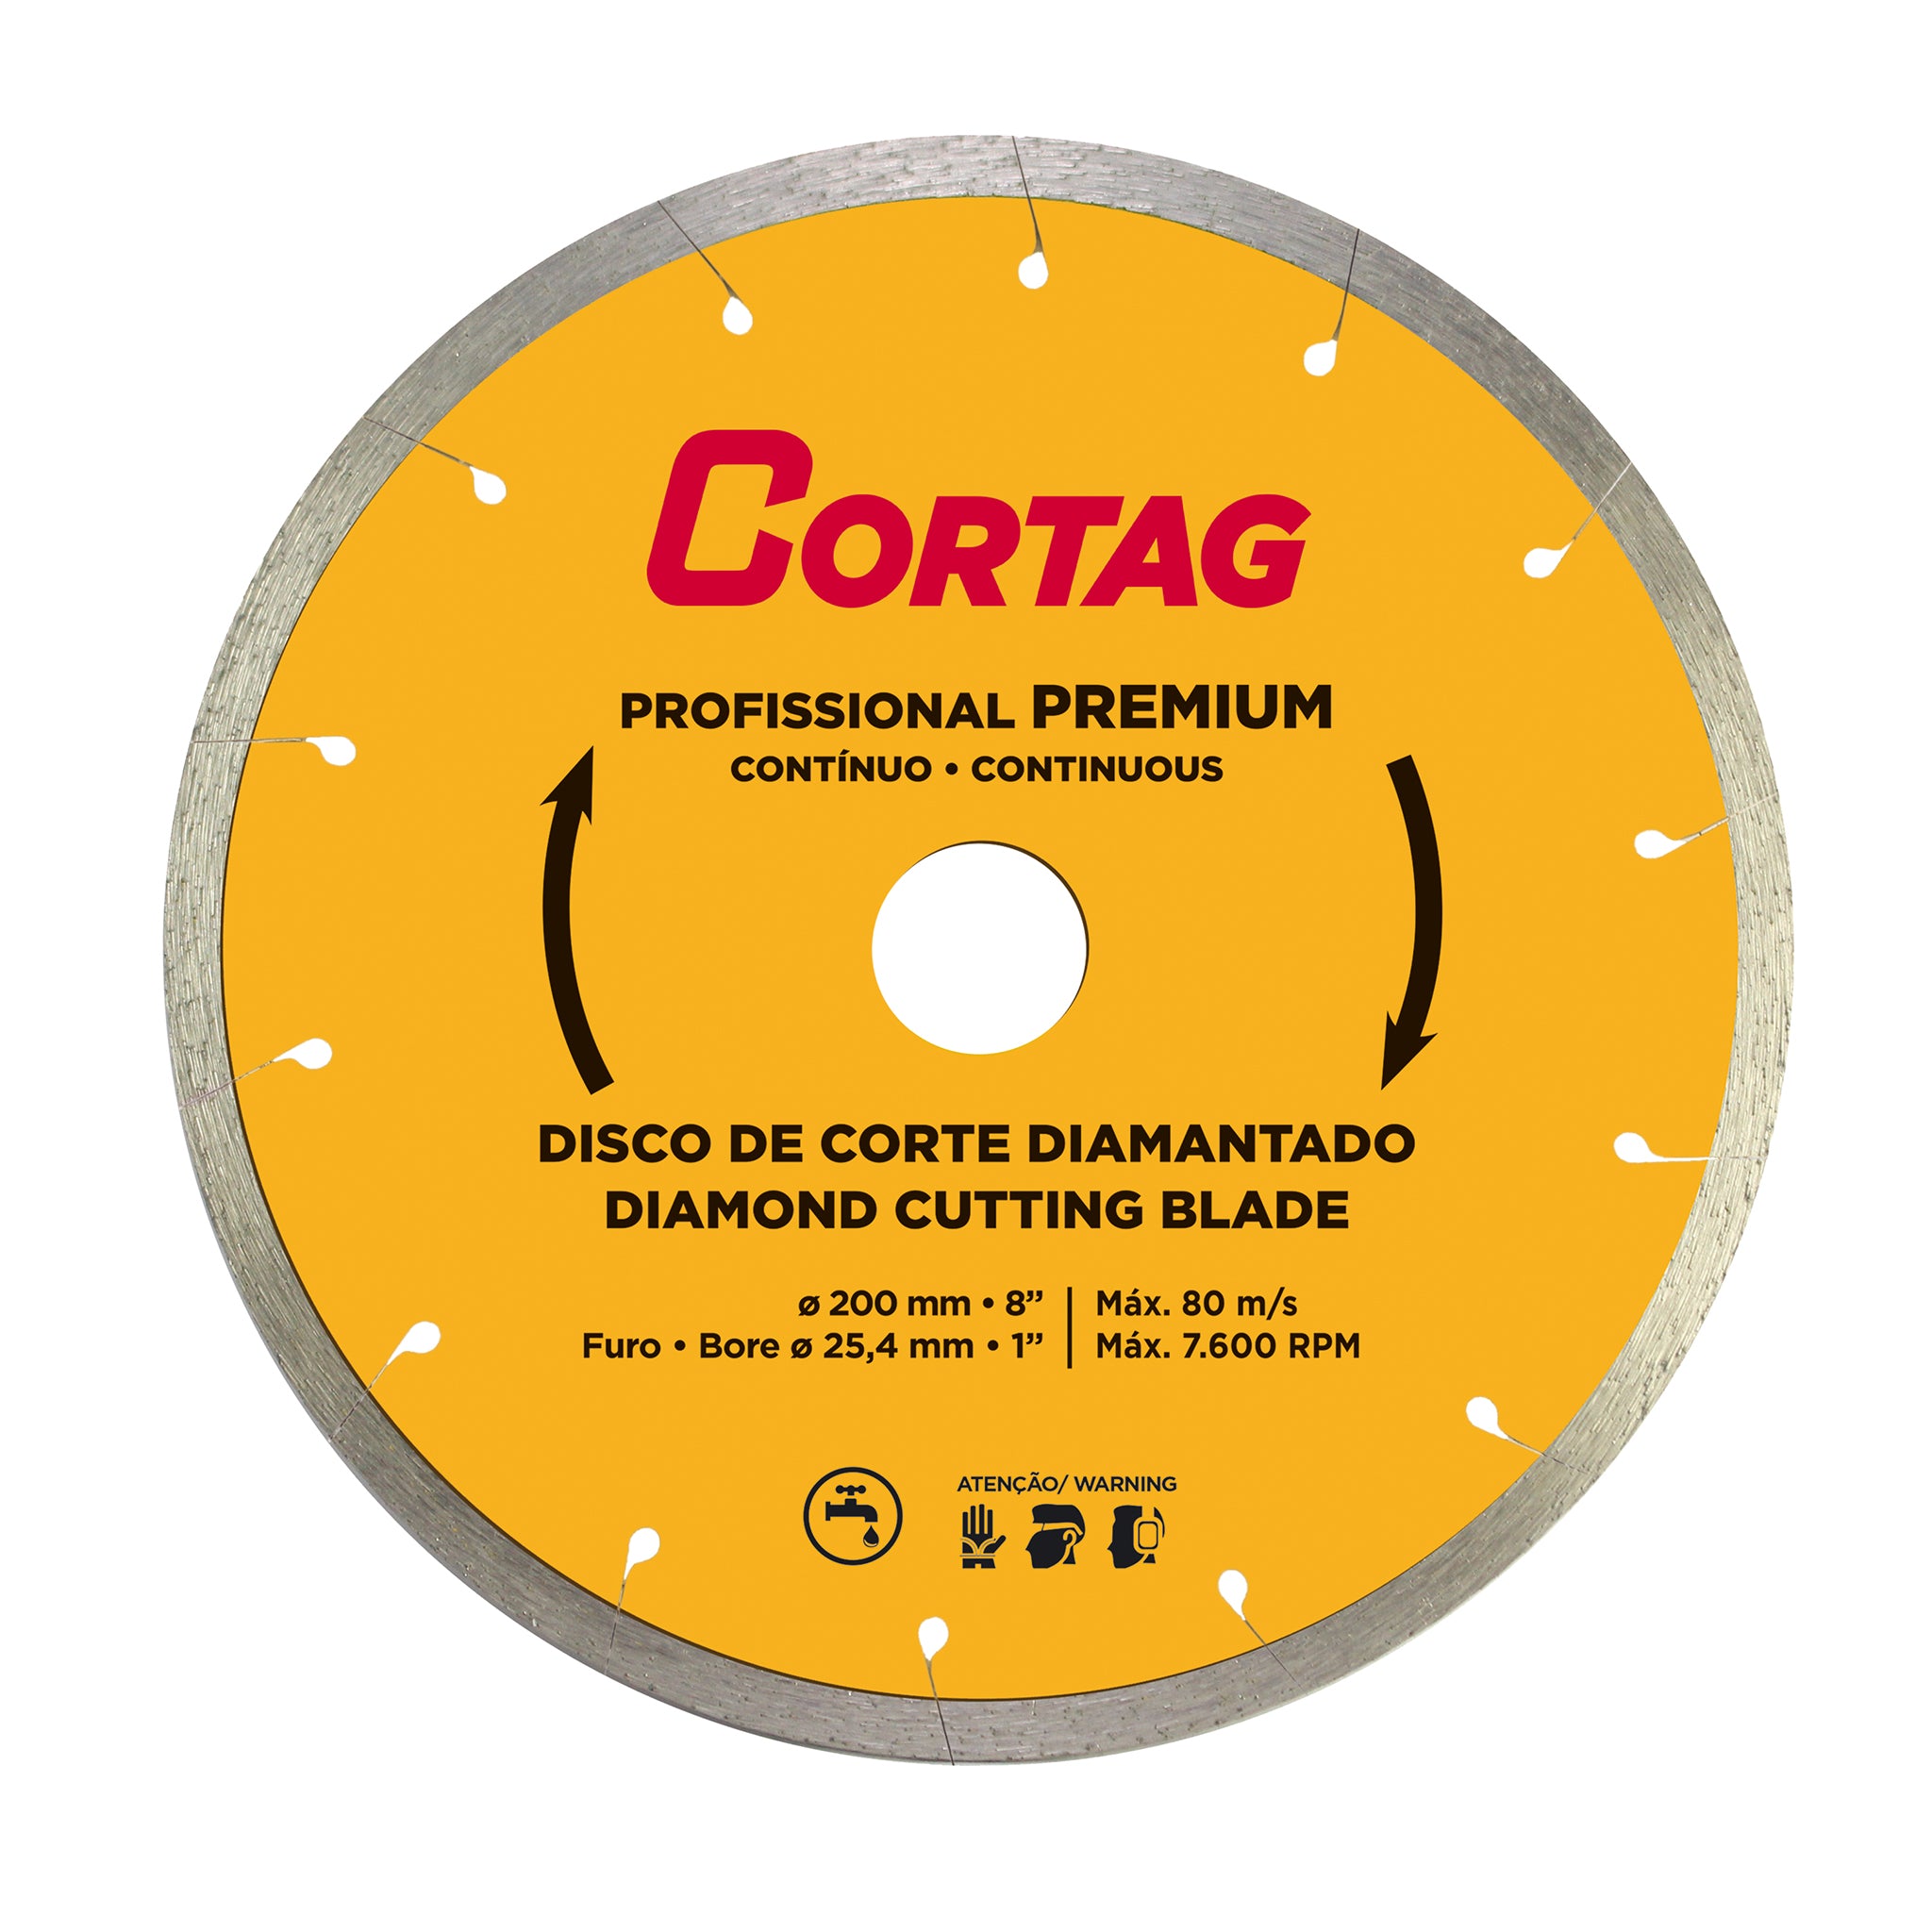 Diamond Cutting Blade - Professional Premium 8"